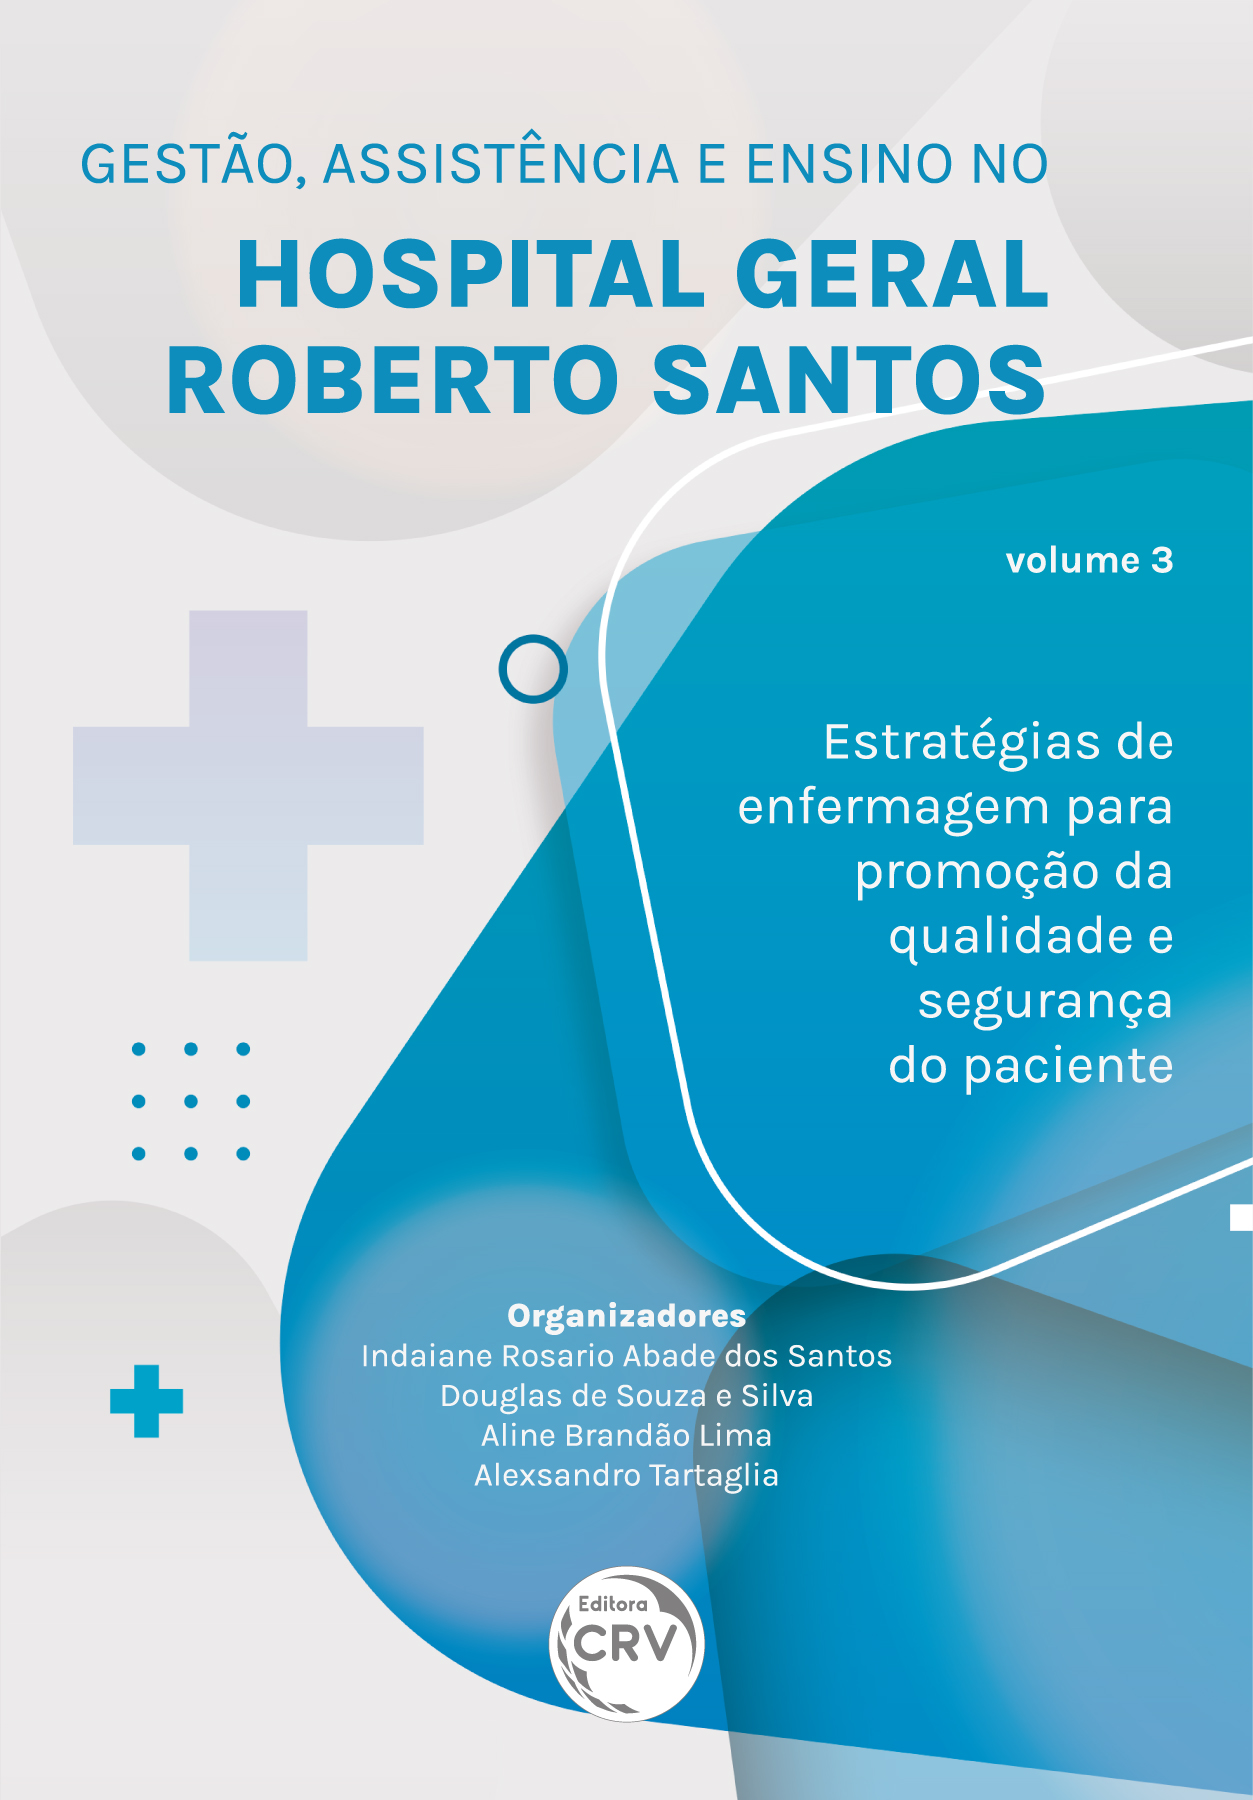 Capa do livro: GESTÃO, ASSISTÊNCIA E ENSINO NO HOSPITAL GERAL ROBERTO SANTOS <BR> estratégias de enfermagem para promoção da qualidade e segurança do paciente <BR> Volume 3